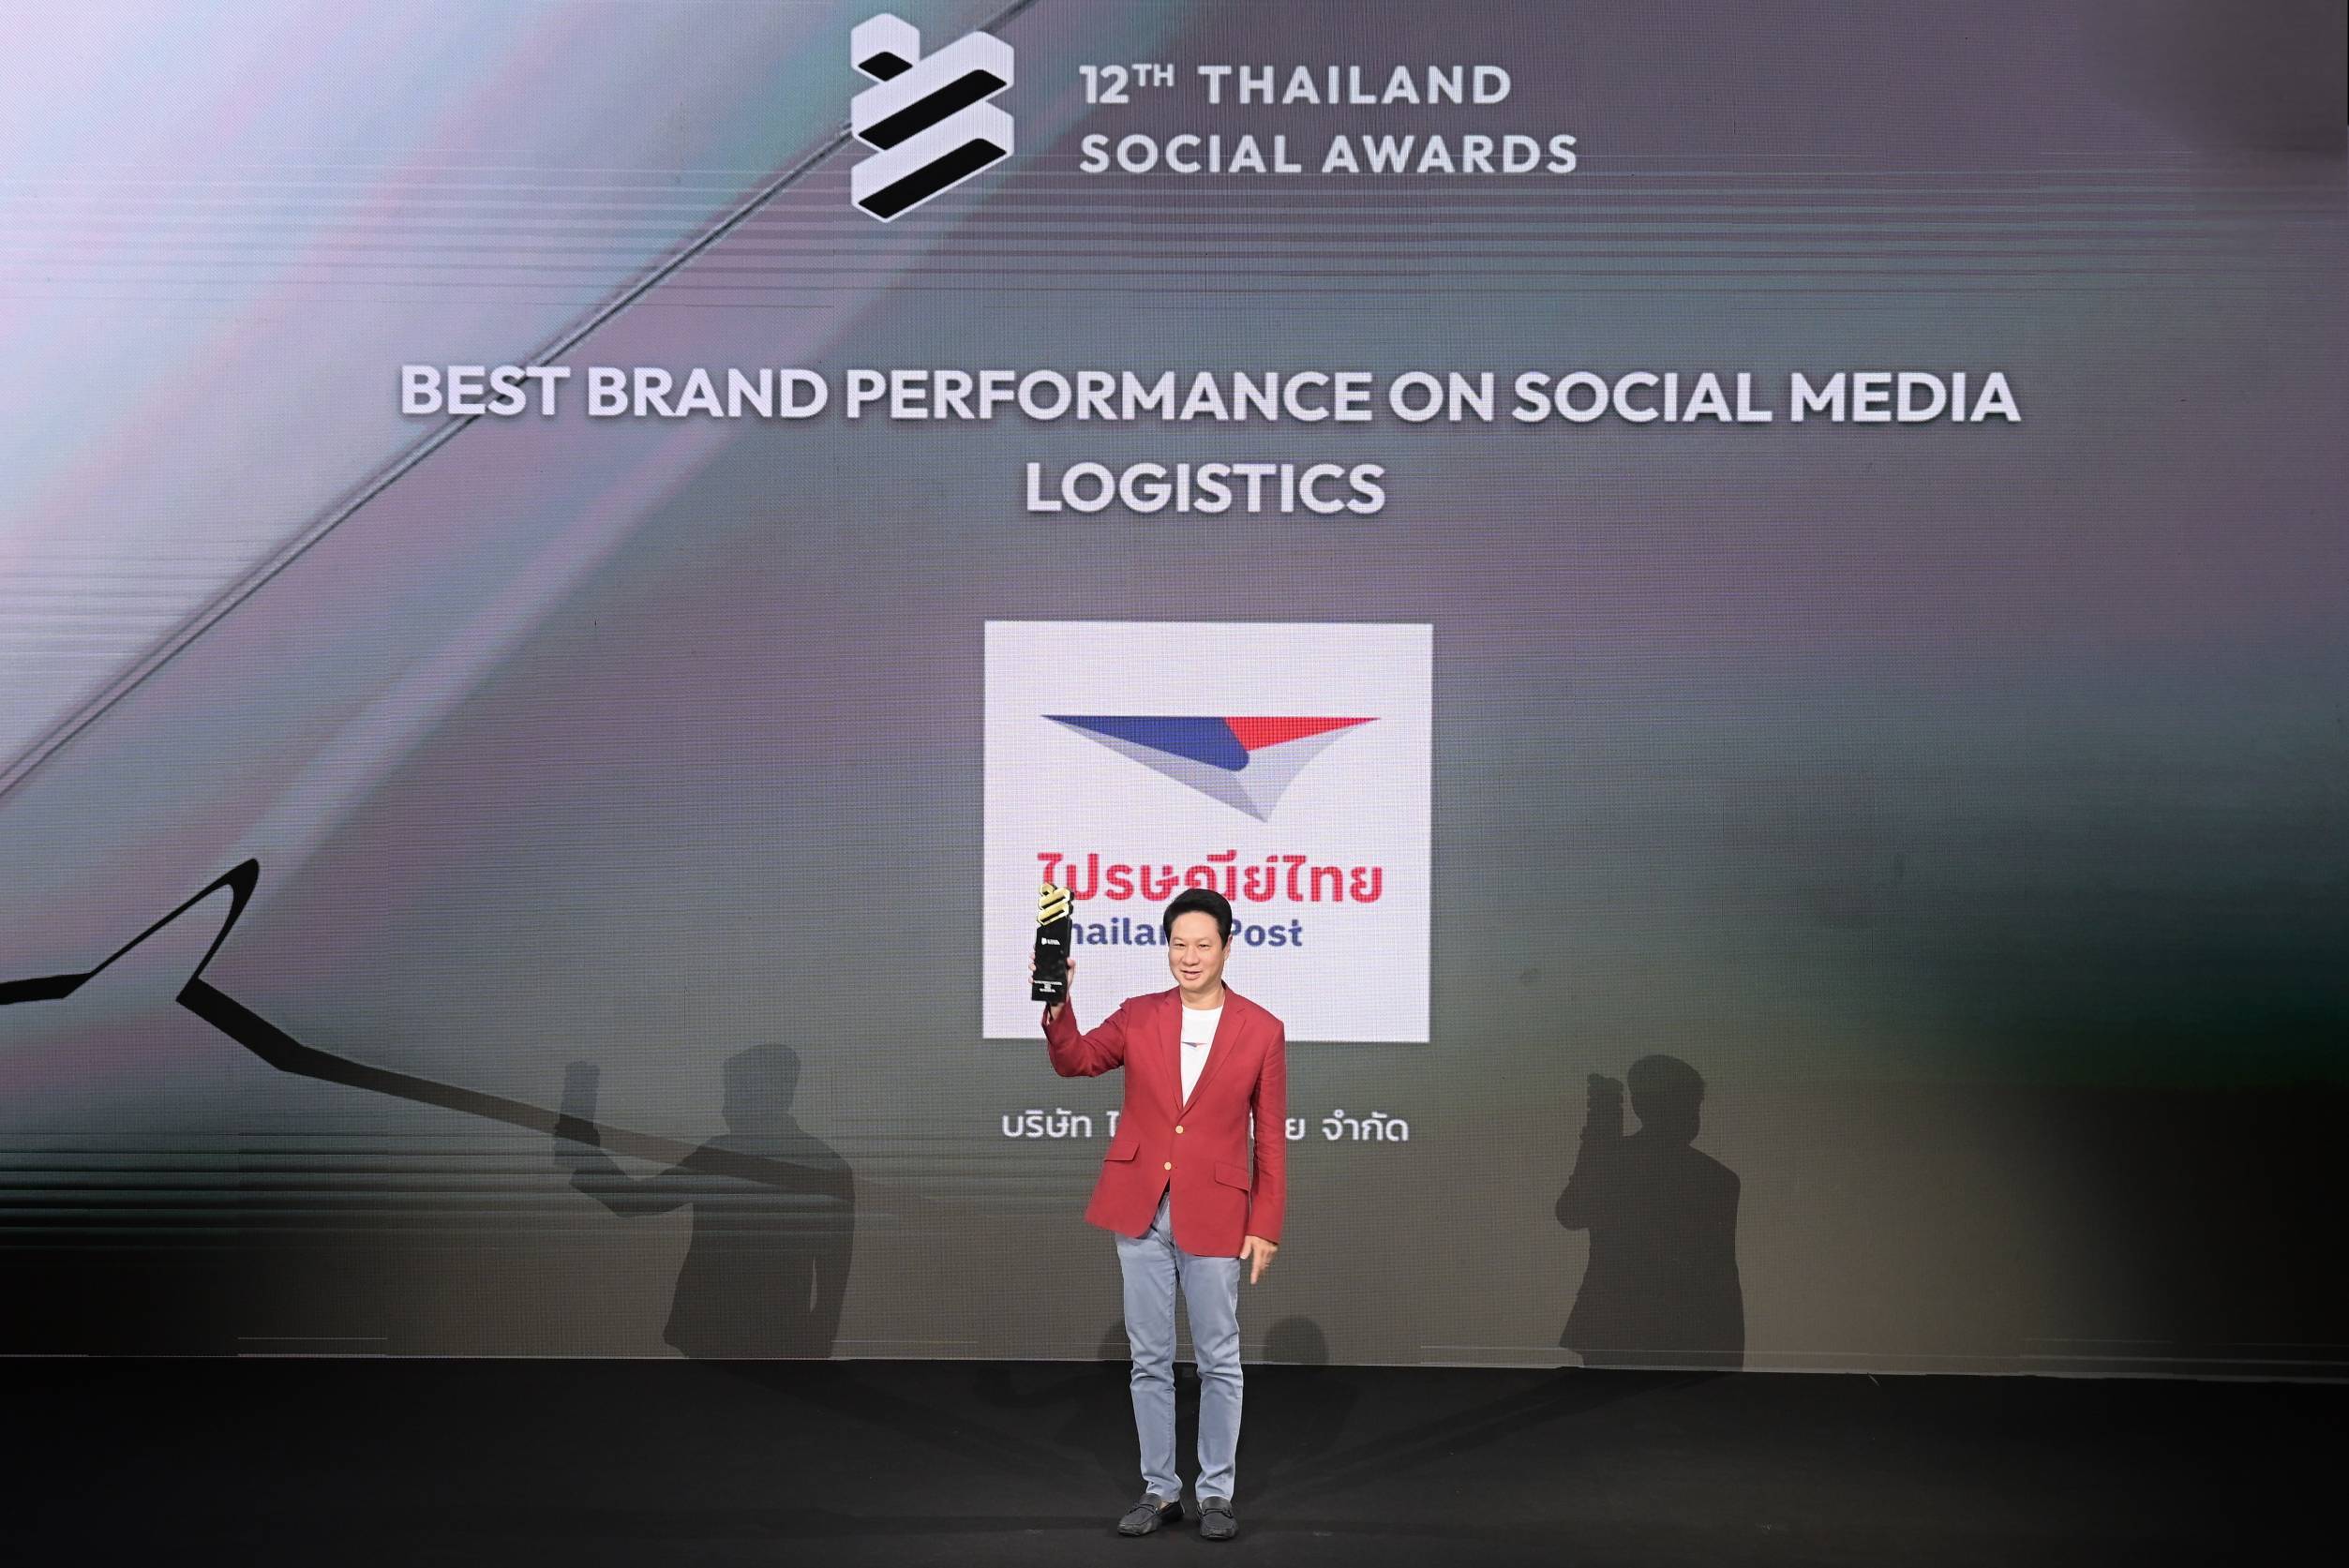 'ไปรษณีย์ไทย' ได้ใจโซเชียล คว้ารางวัล THAILAND SOCIAL AWARDS 2 ปีซ้อน!